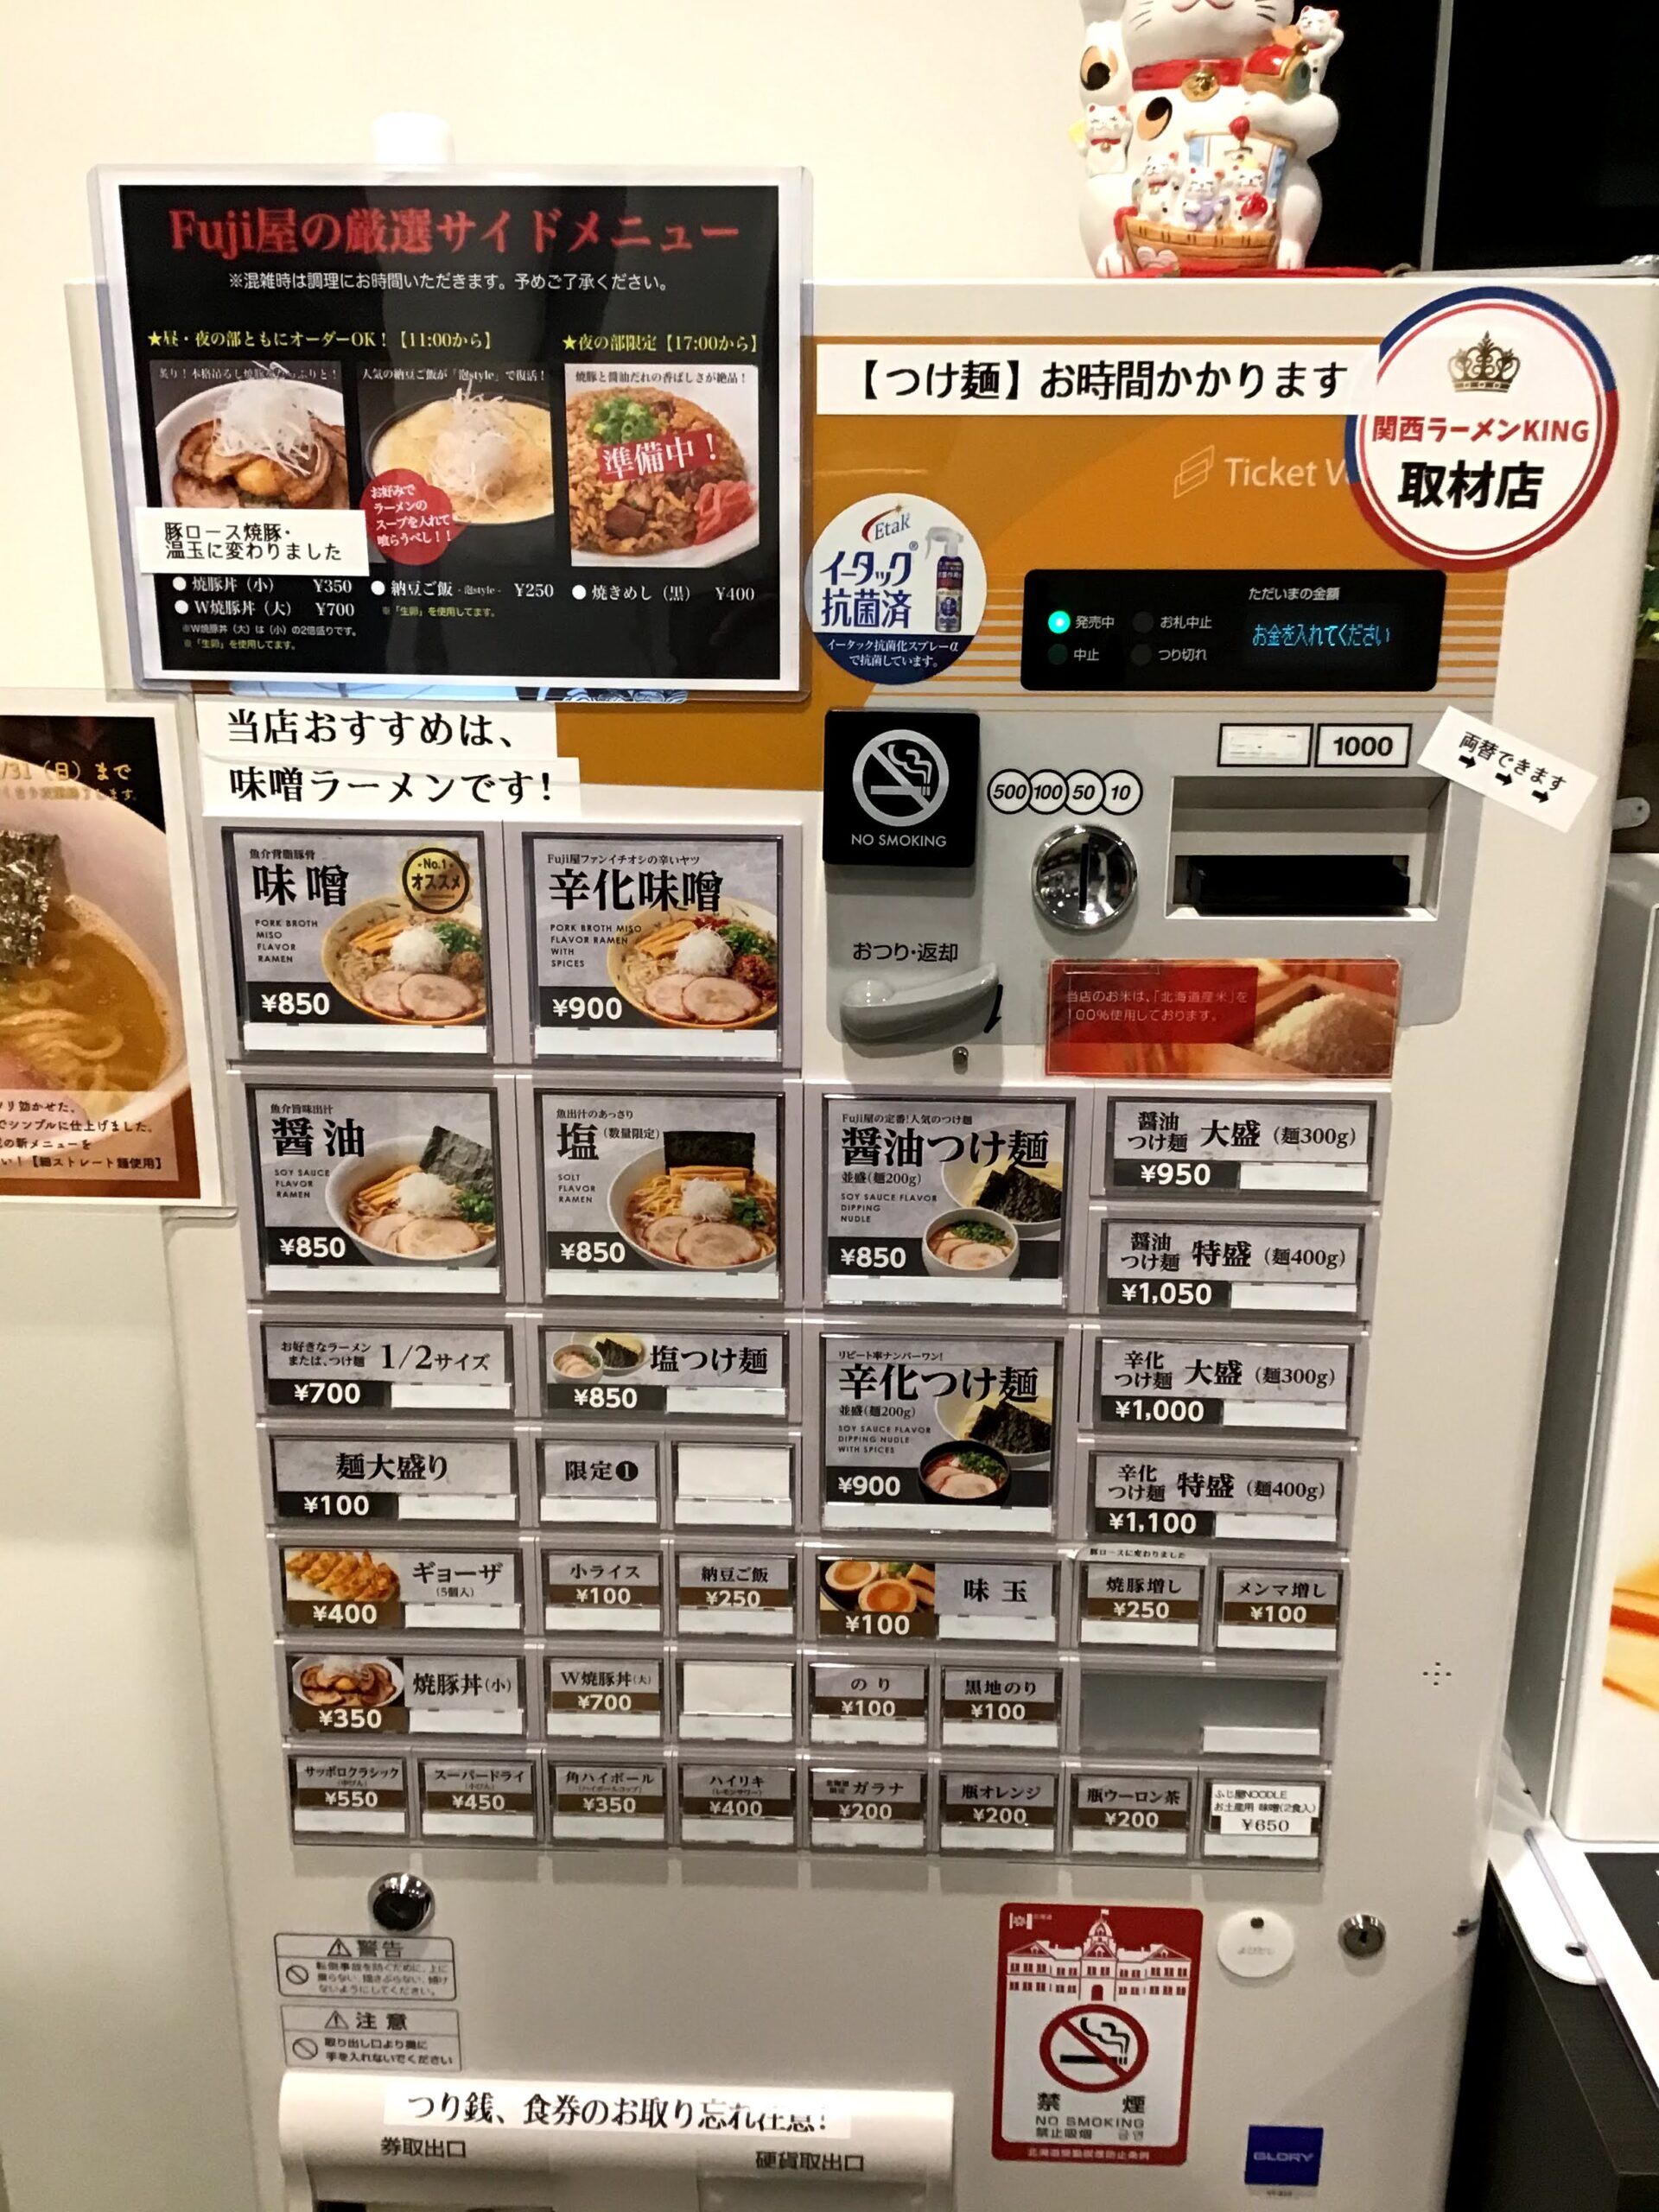 札幌Fuji屋店内券売機